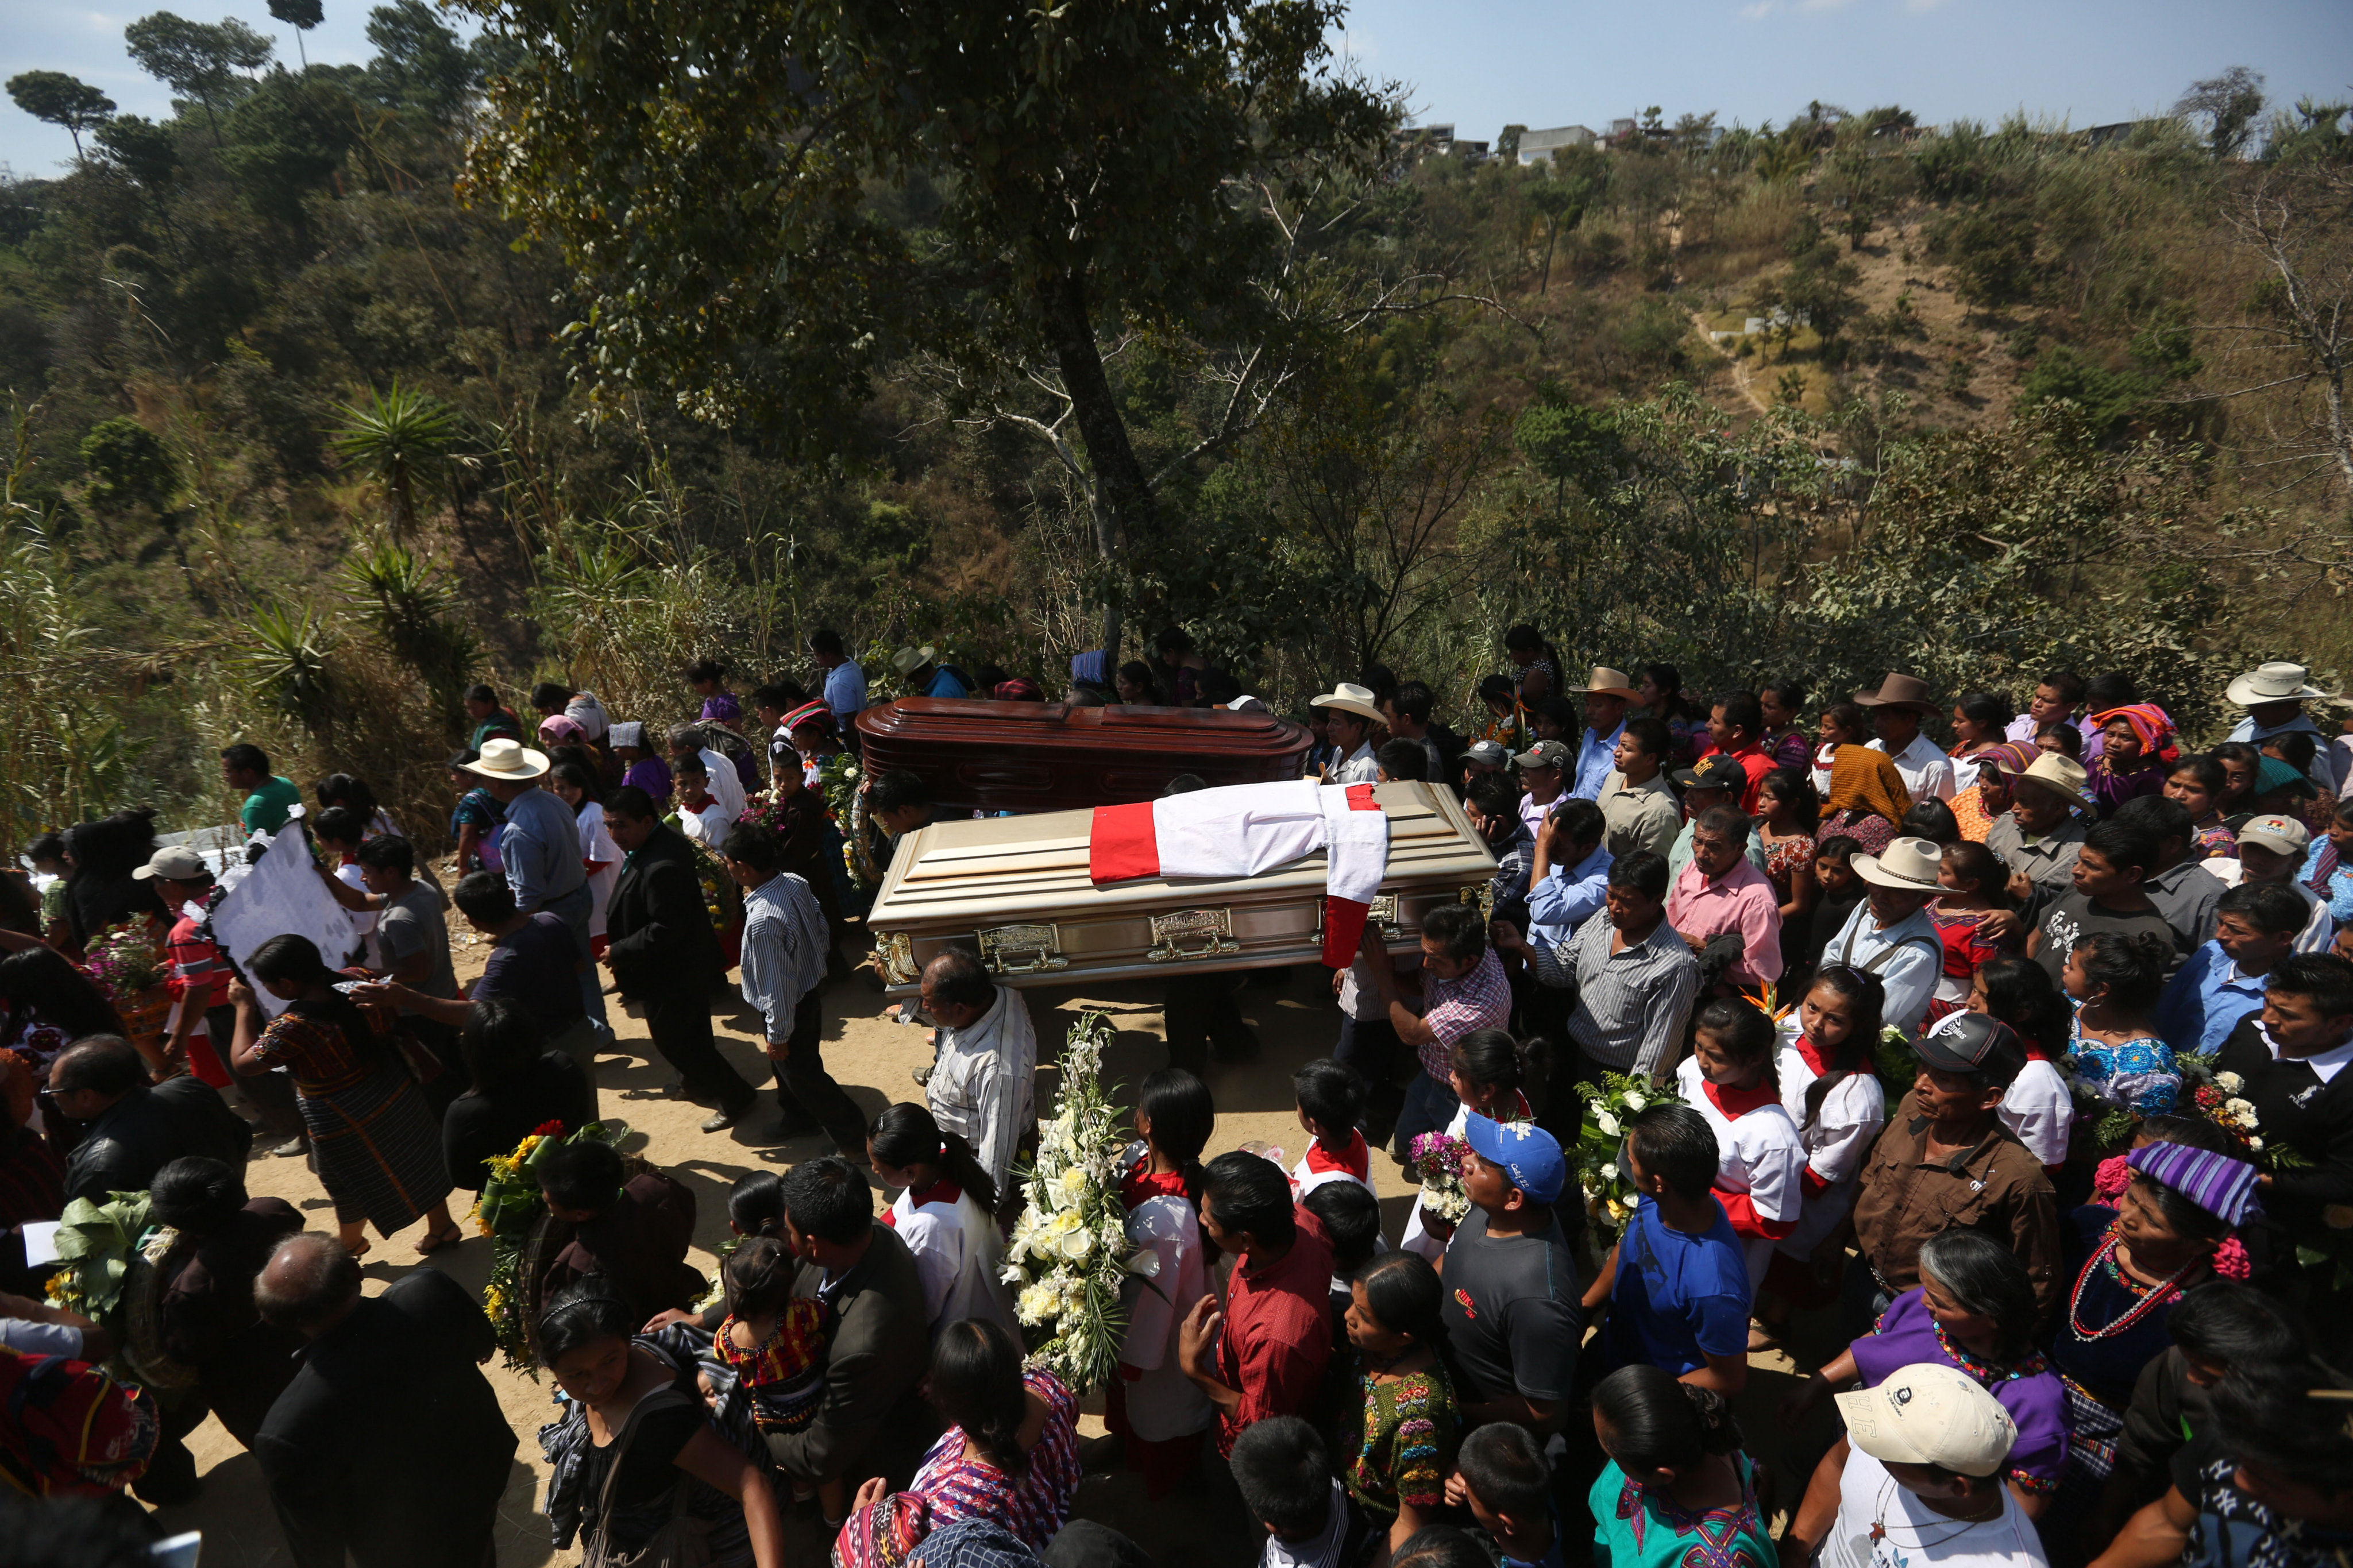 Carlos Daniel Xiquin Top y Oscar Top Cotzajay, los dos niños guatemaltecos degollados, recibieron sepultura ante miles de personas que les acompañaron. EFE